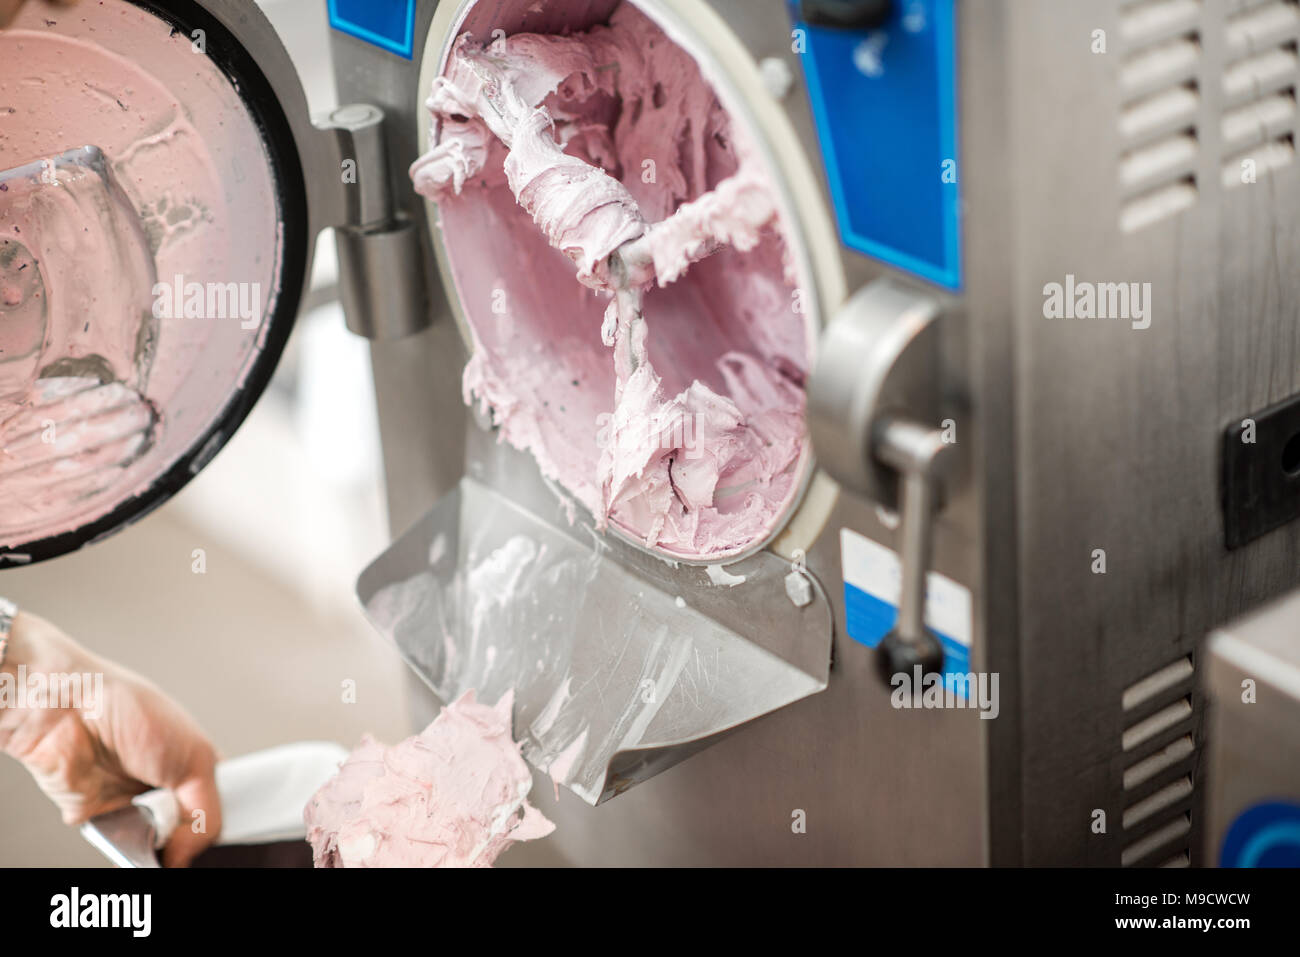 Cleaning ice cream maker machine Stock Photo